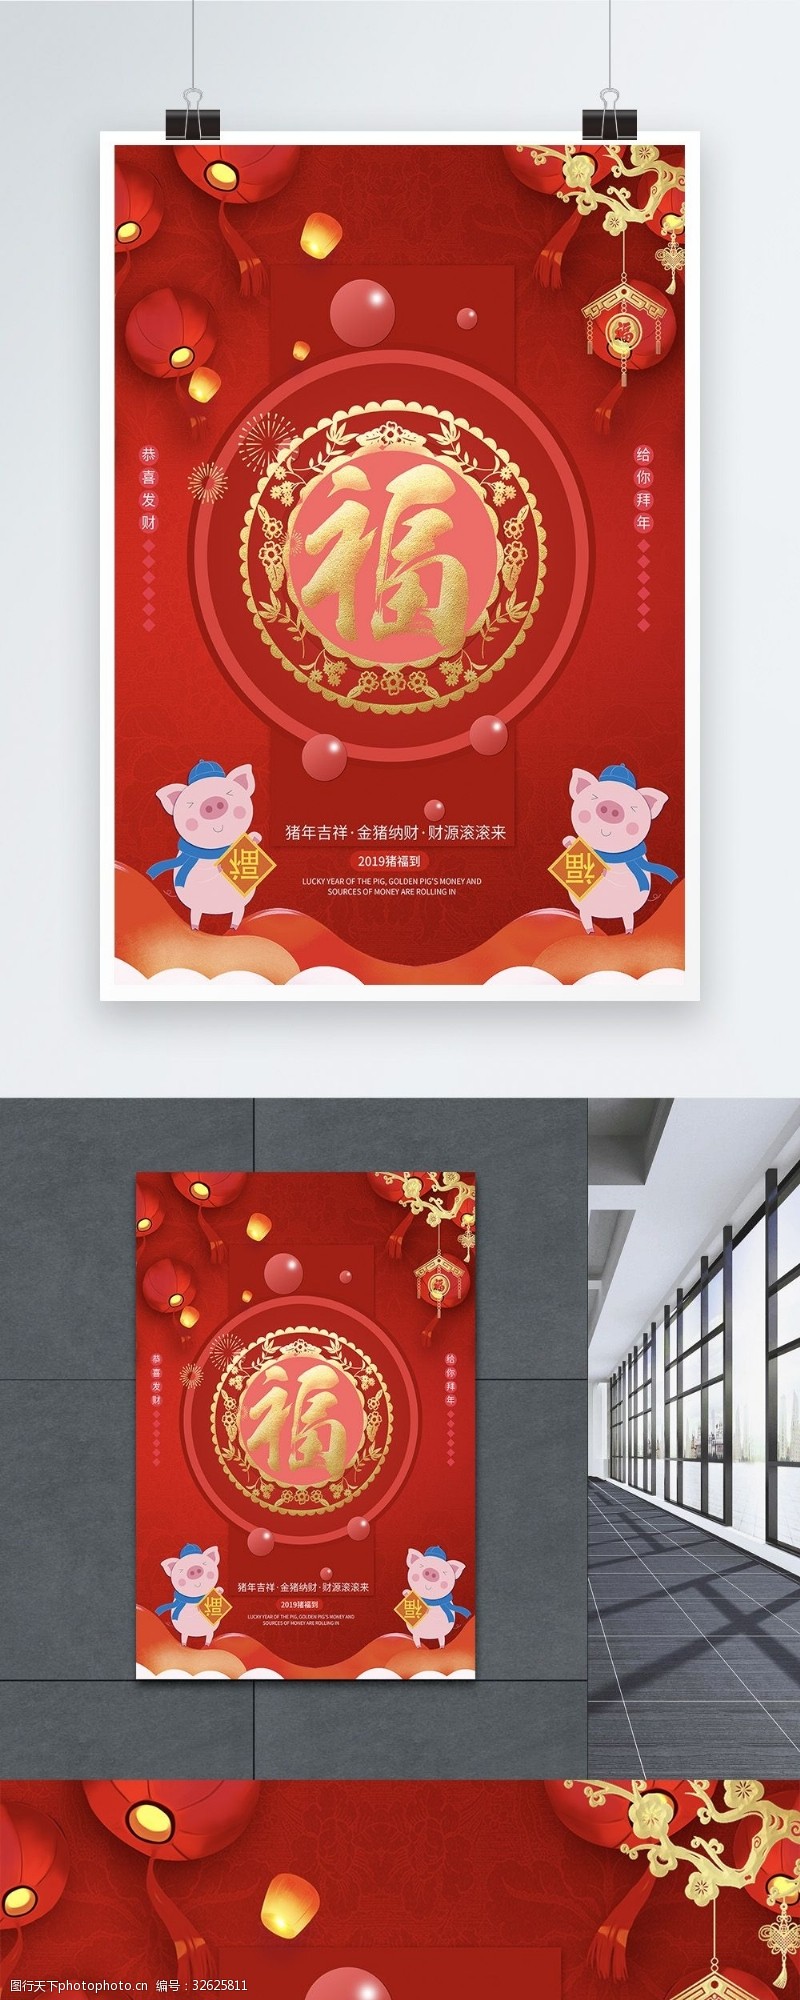 猪年祝福红色喜庆2019年新春贺岁福字海报